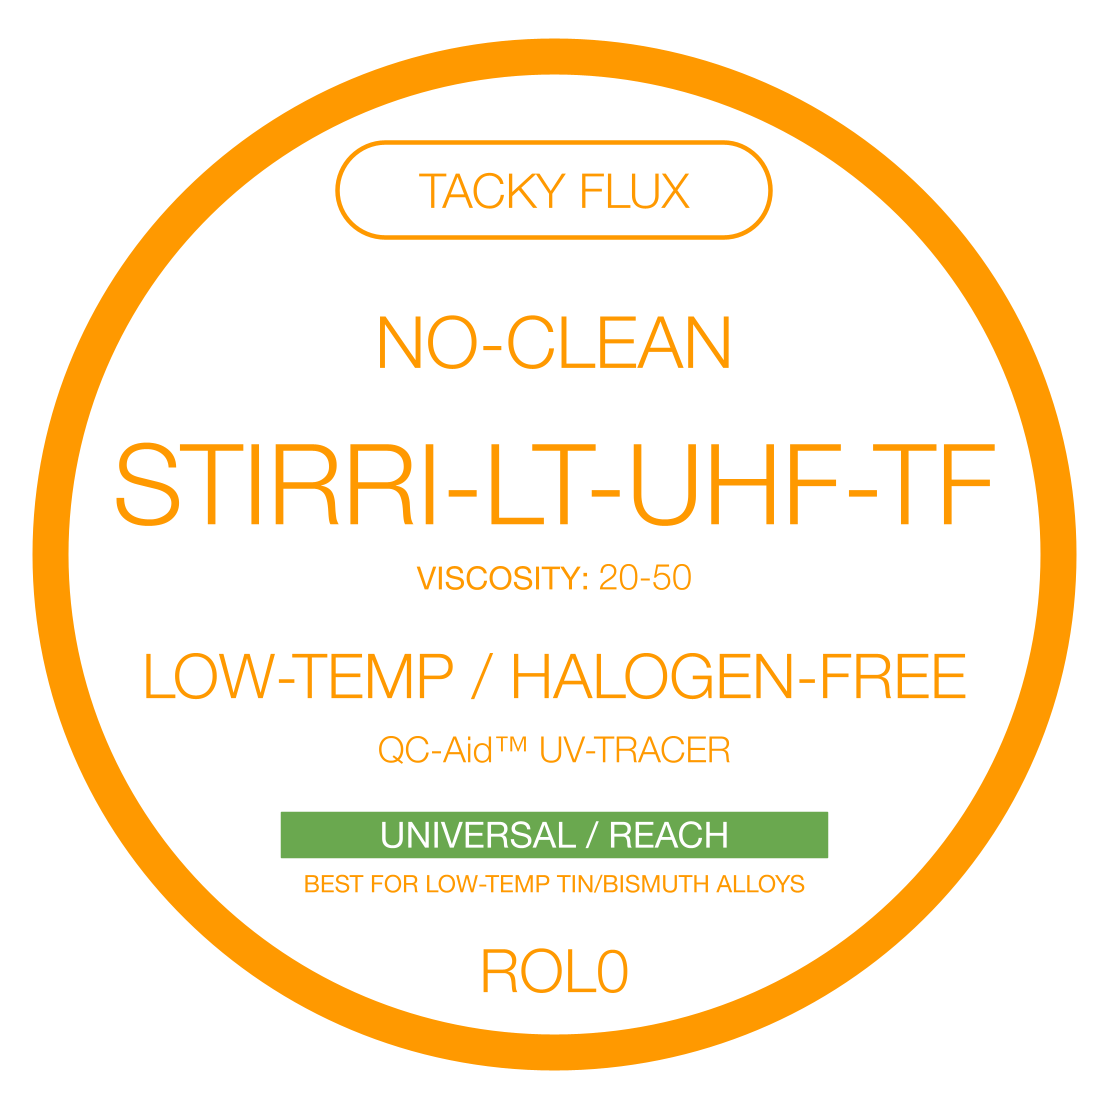 STIRRI-LT-HF-TF Flujo en pasta pegajoso para soldadura de baja temperatura, sin necesidad de limpieza y sin halógenos para aleaciones de baja temperatura (ROL0)